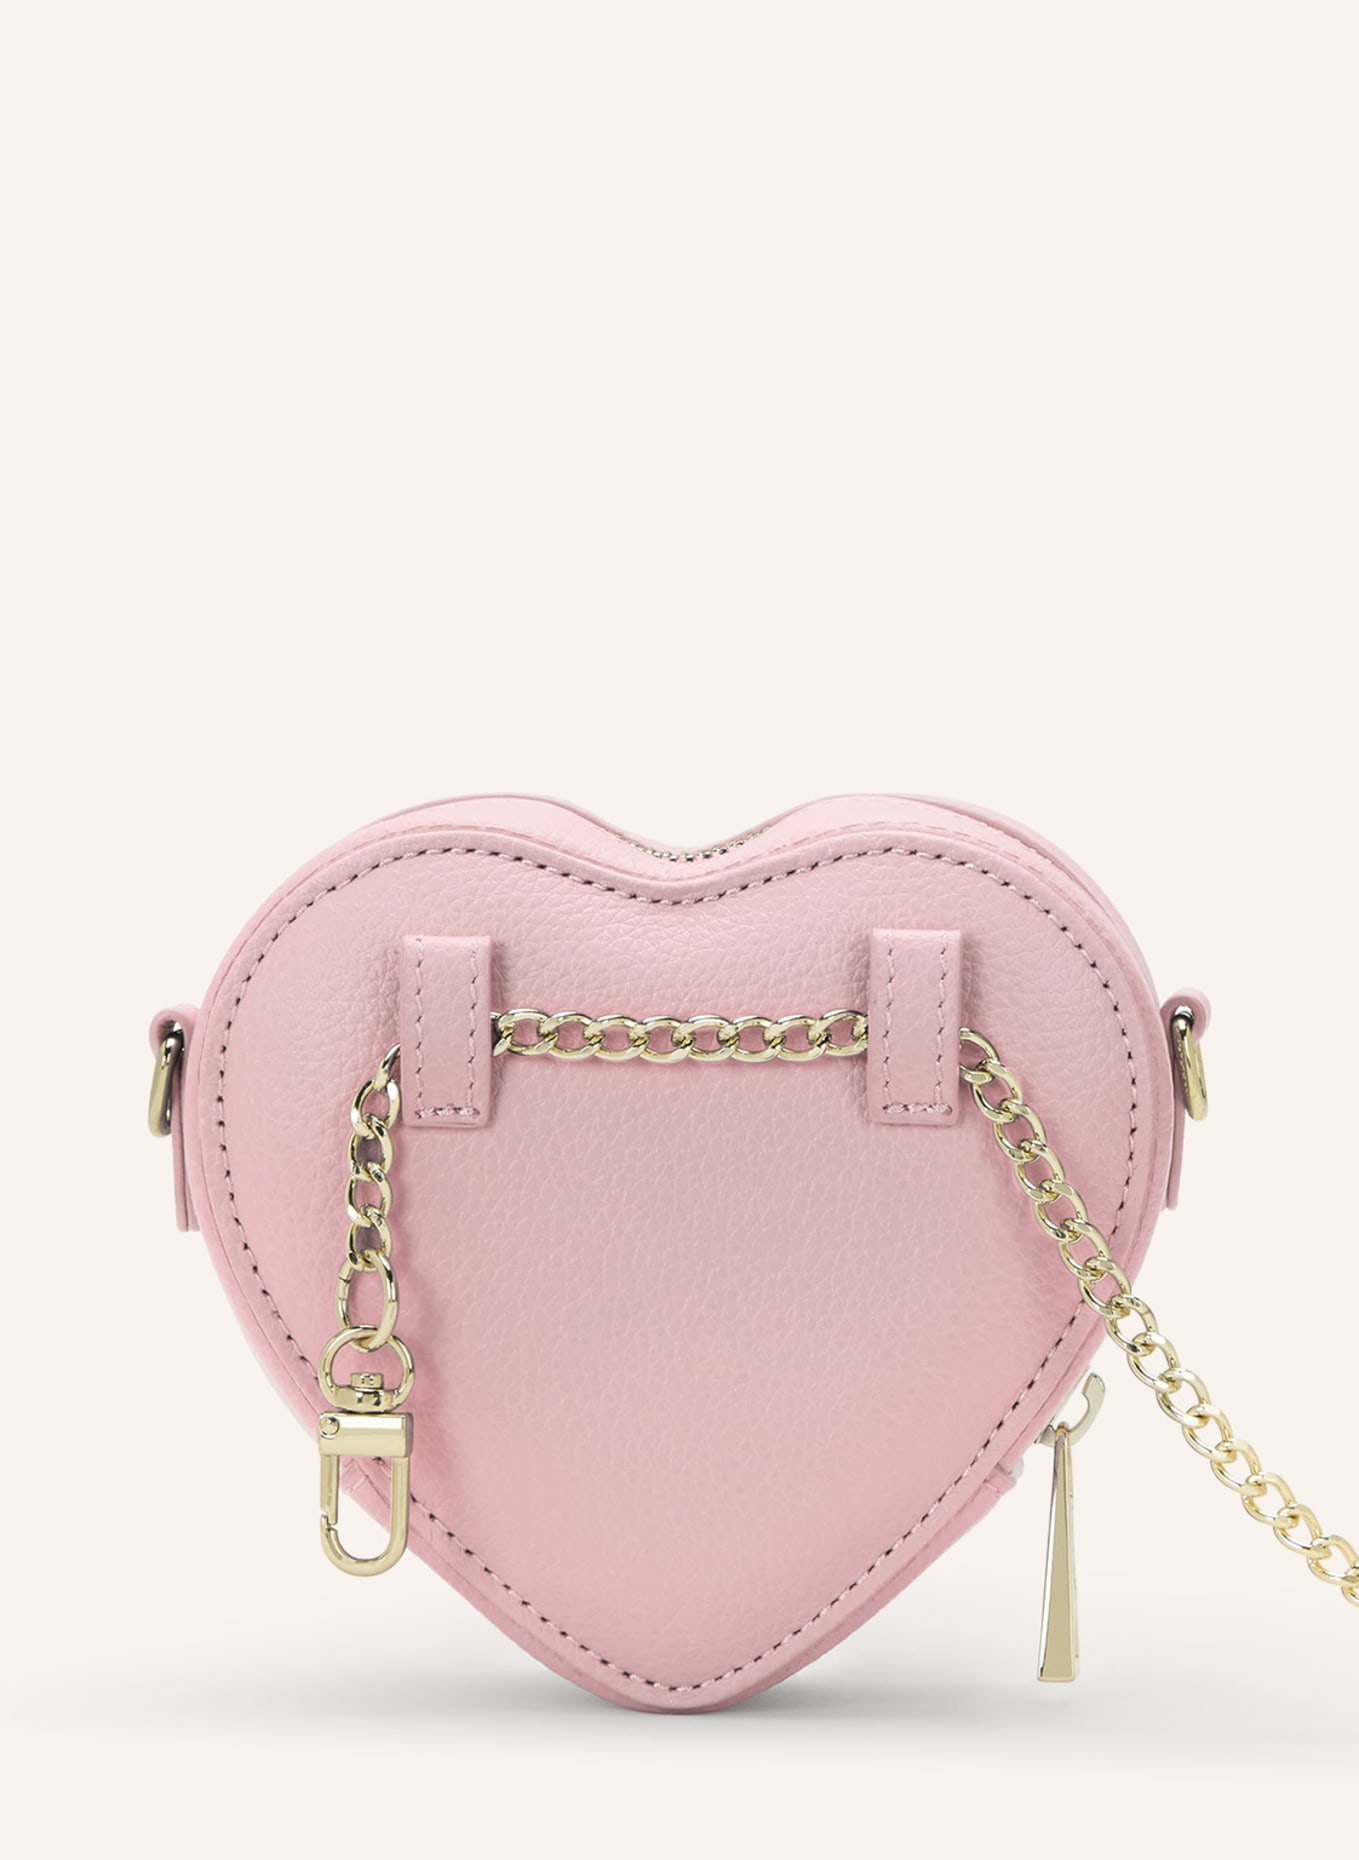 WEAT Handtasche MINI HEART, Farbe: ROSA (Bild 2)